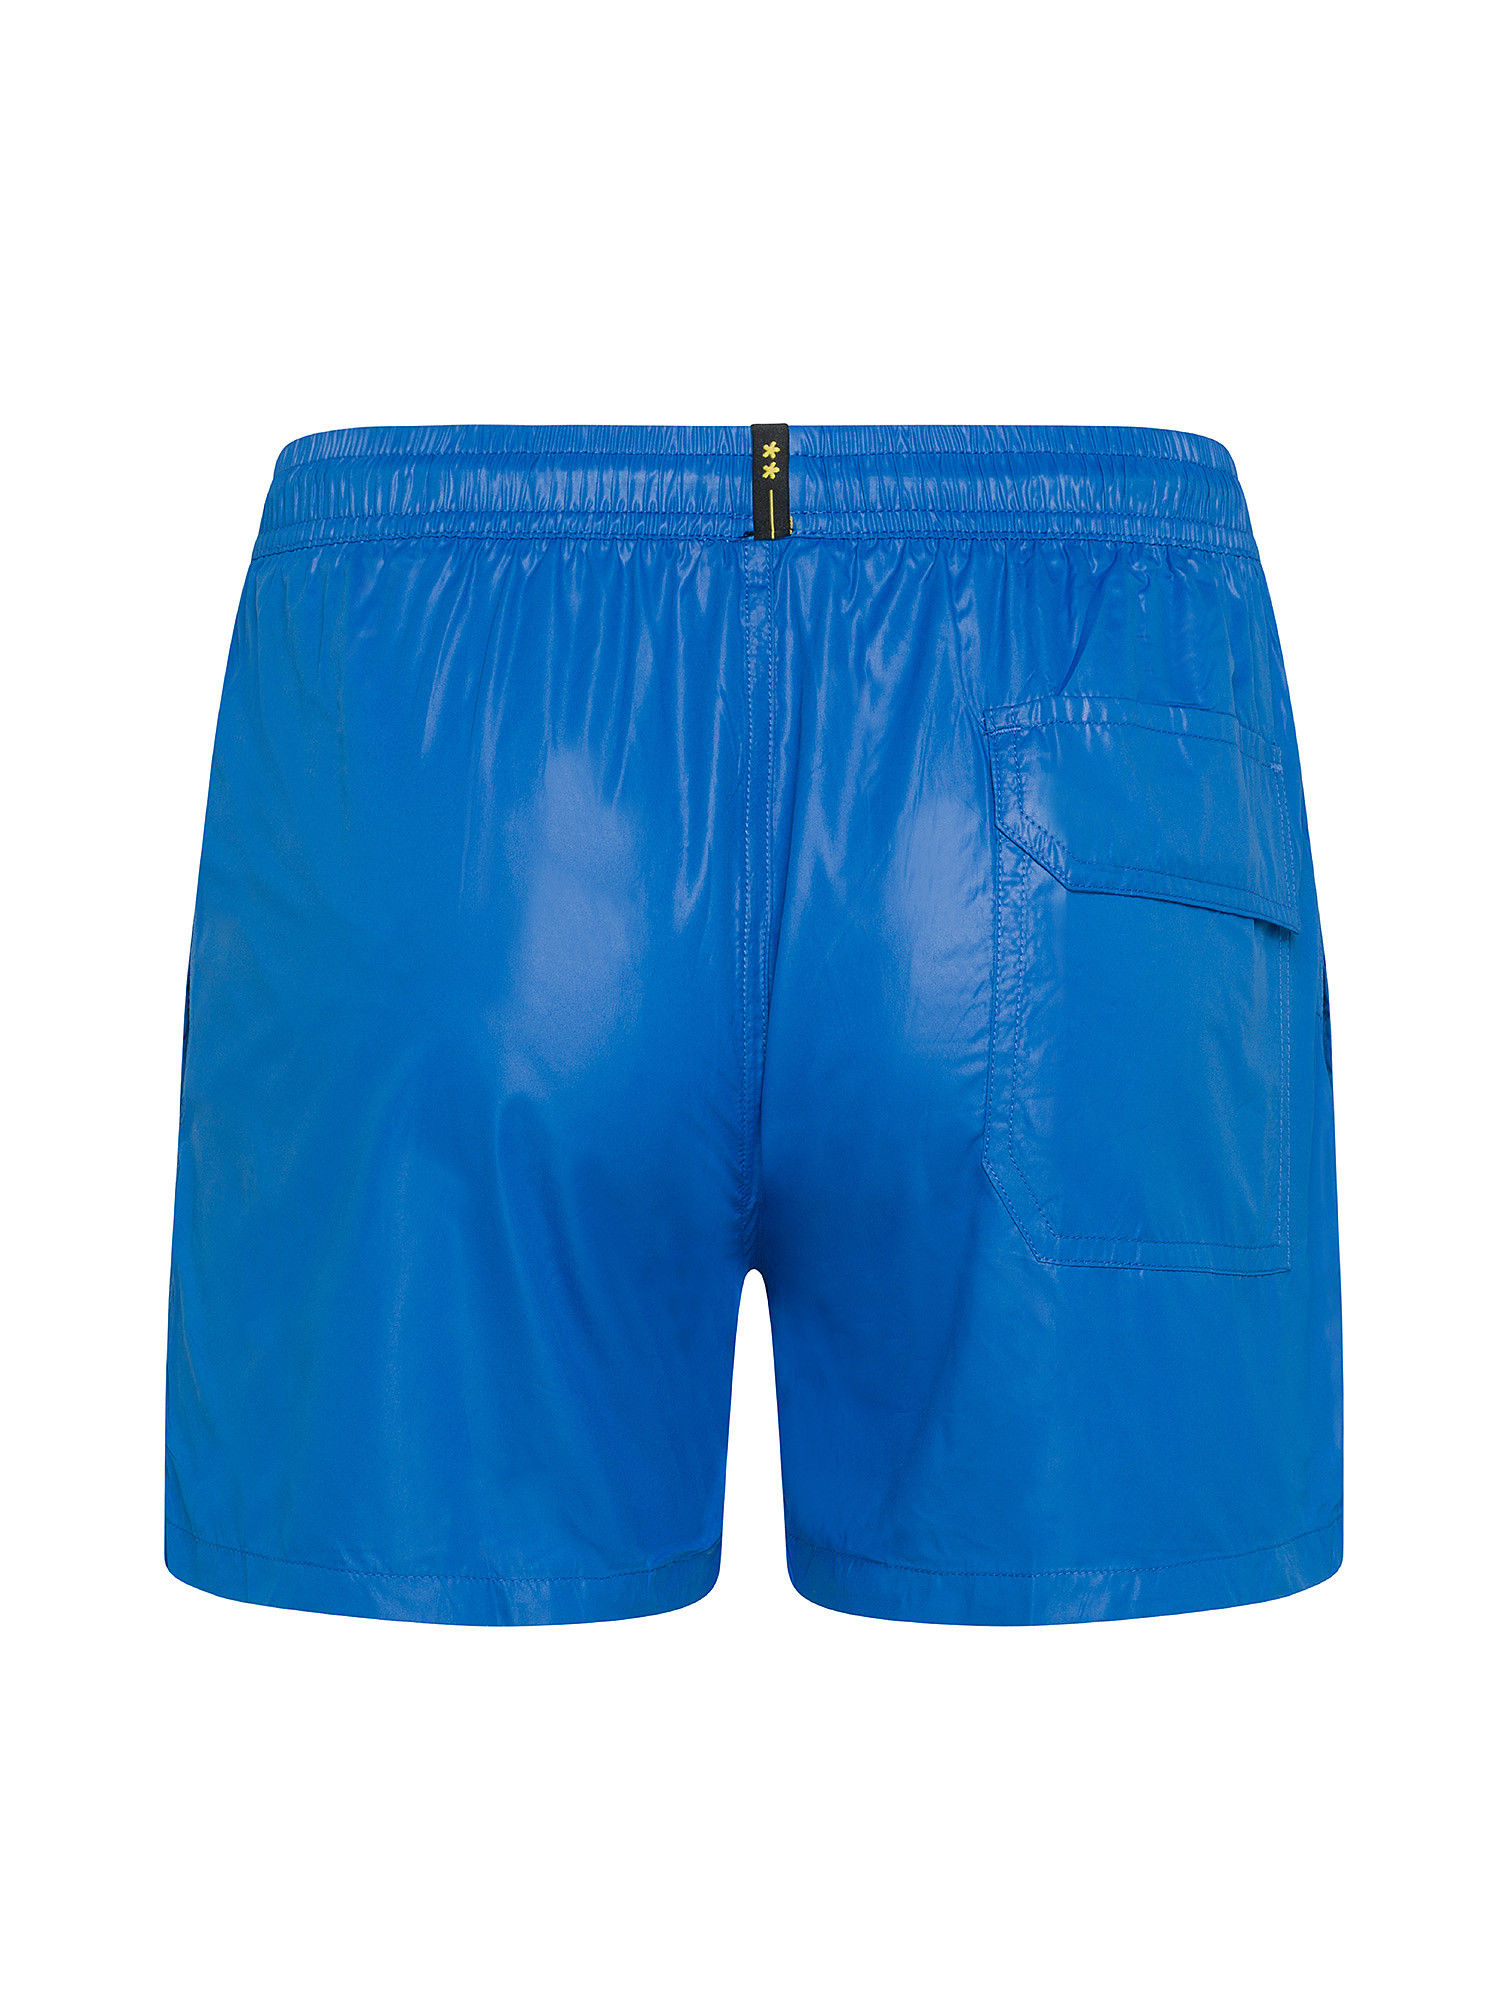 F**K - Shiny swim shorts, Royal Blue, large image number 1